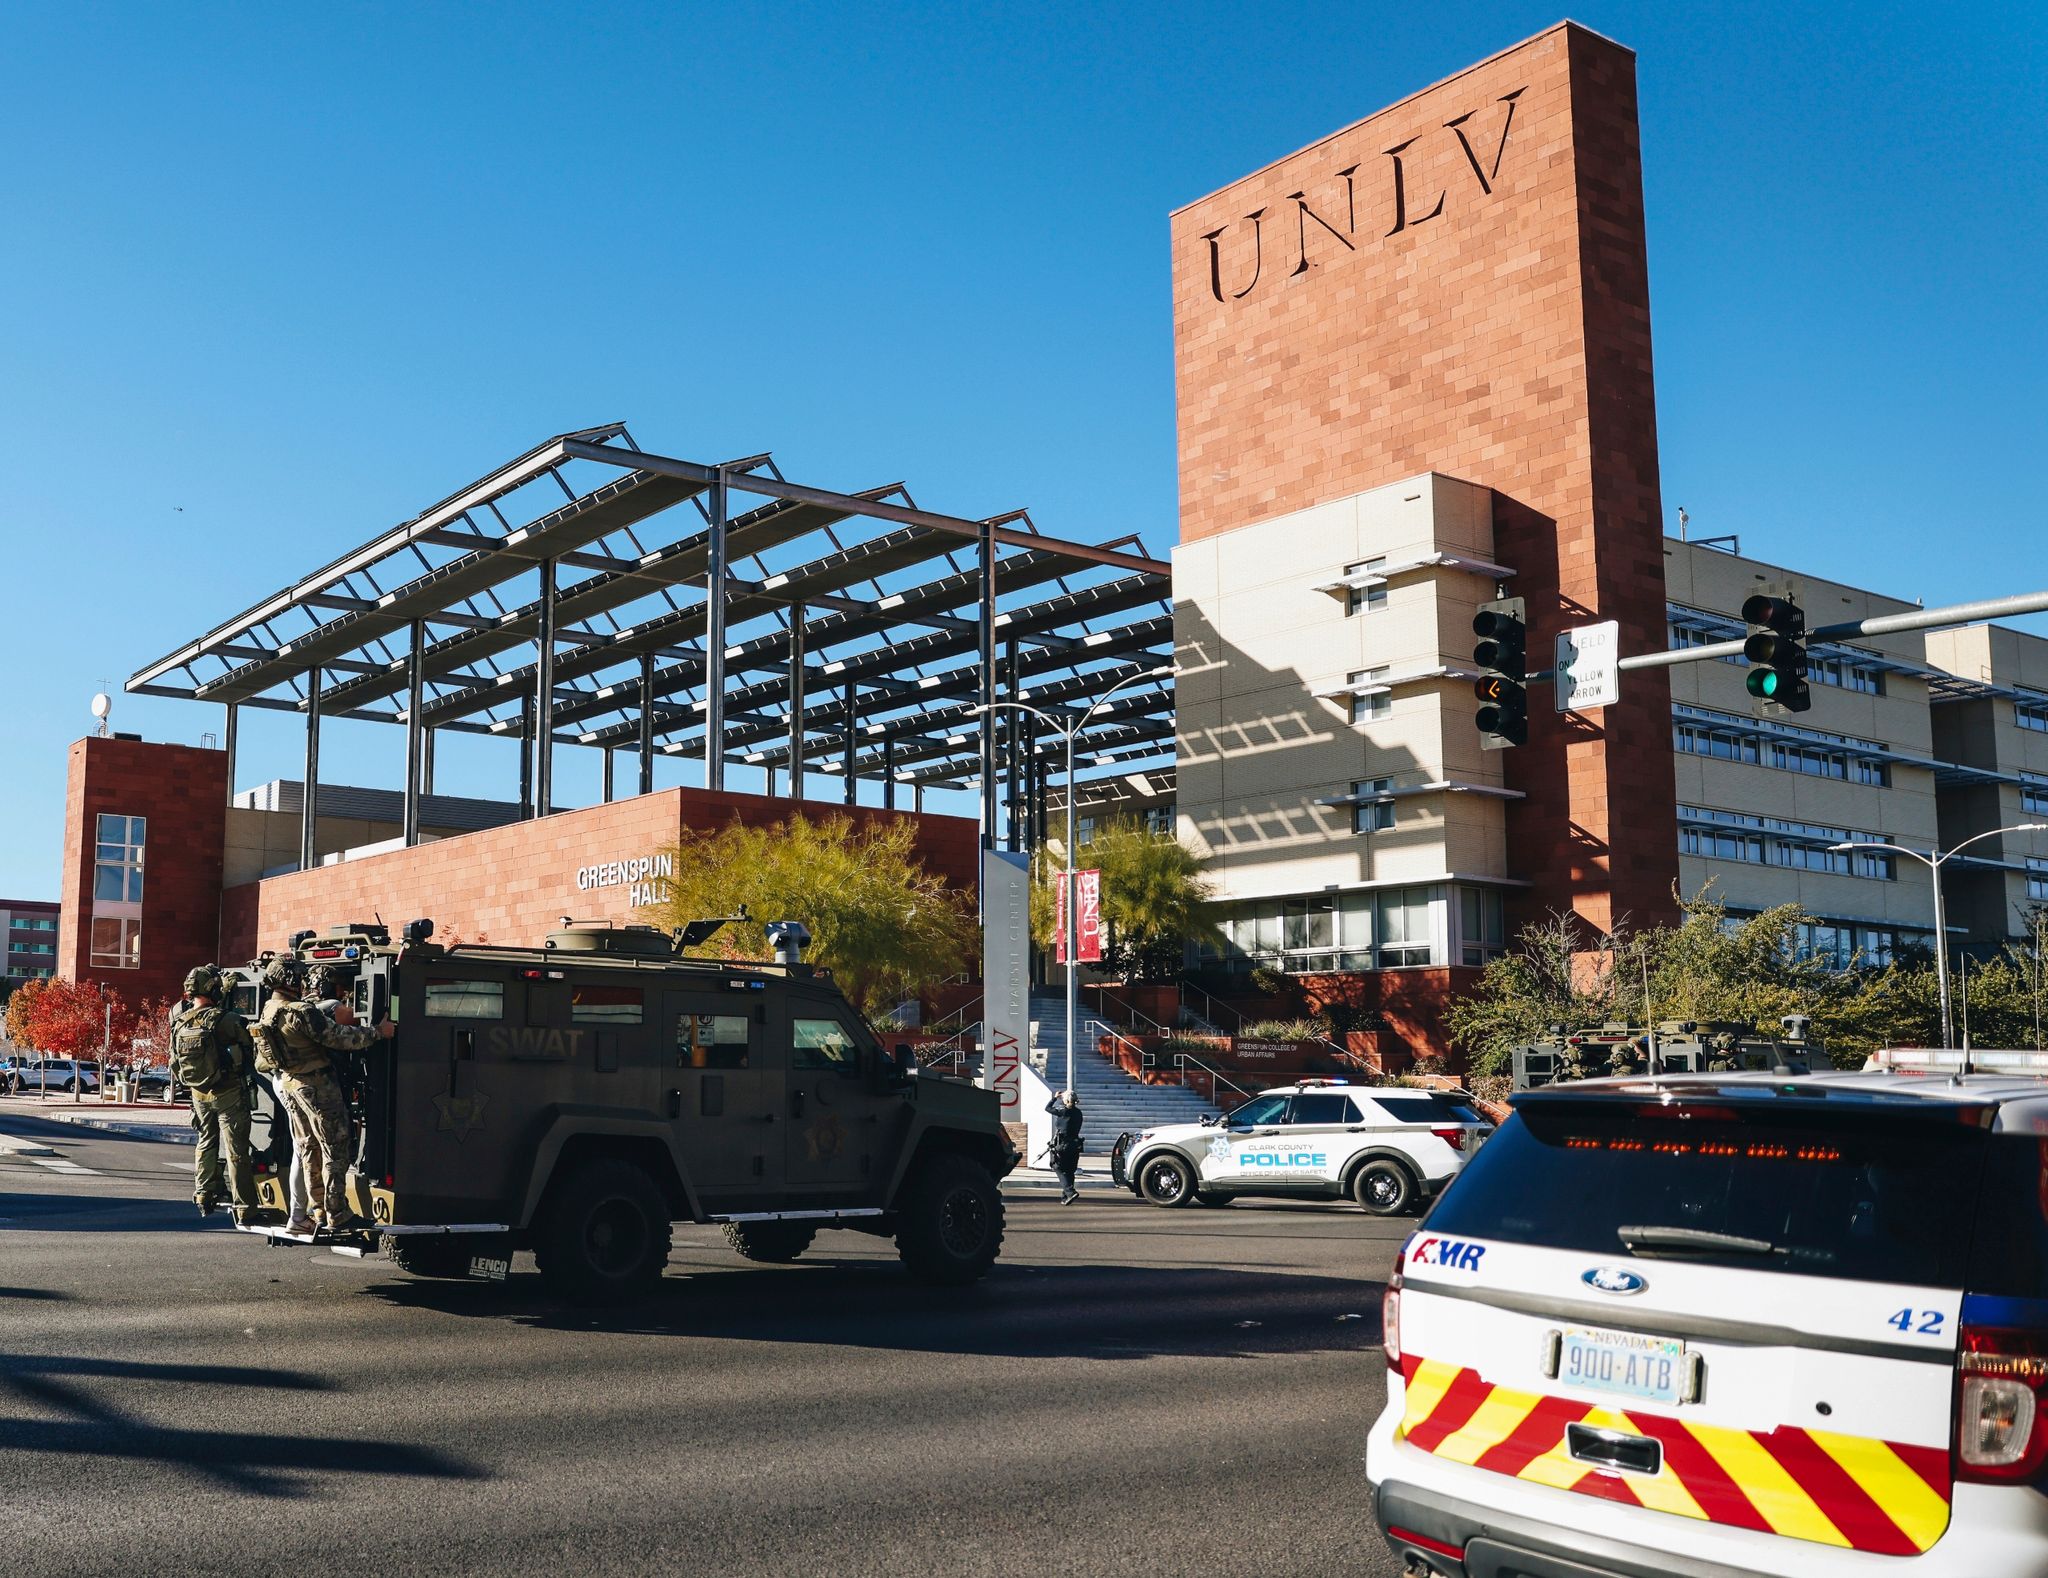 Bei einem Schusswaffenangriff an einer Universität in Las Vegas wurden drei Menschen getötet.